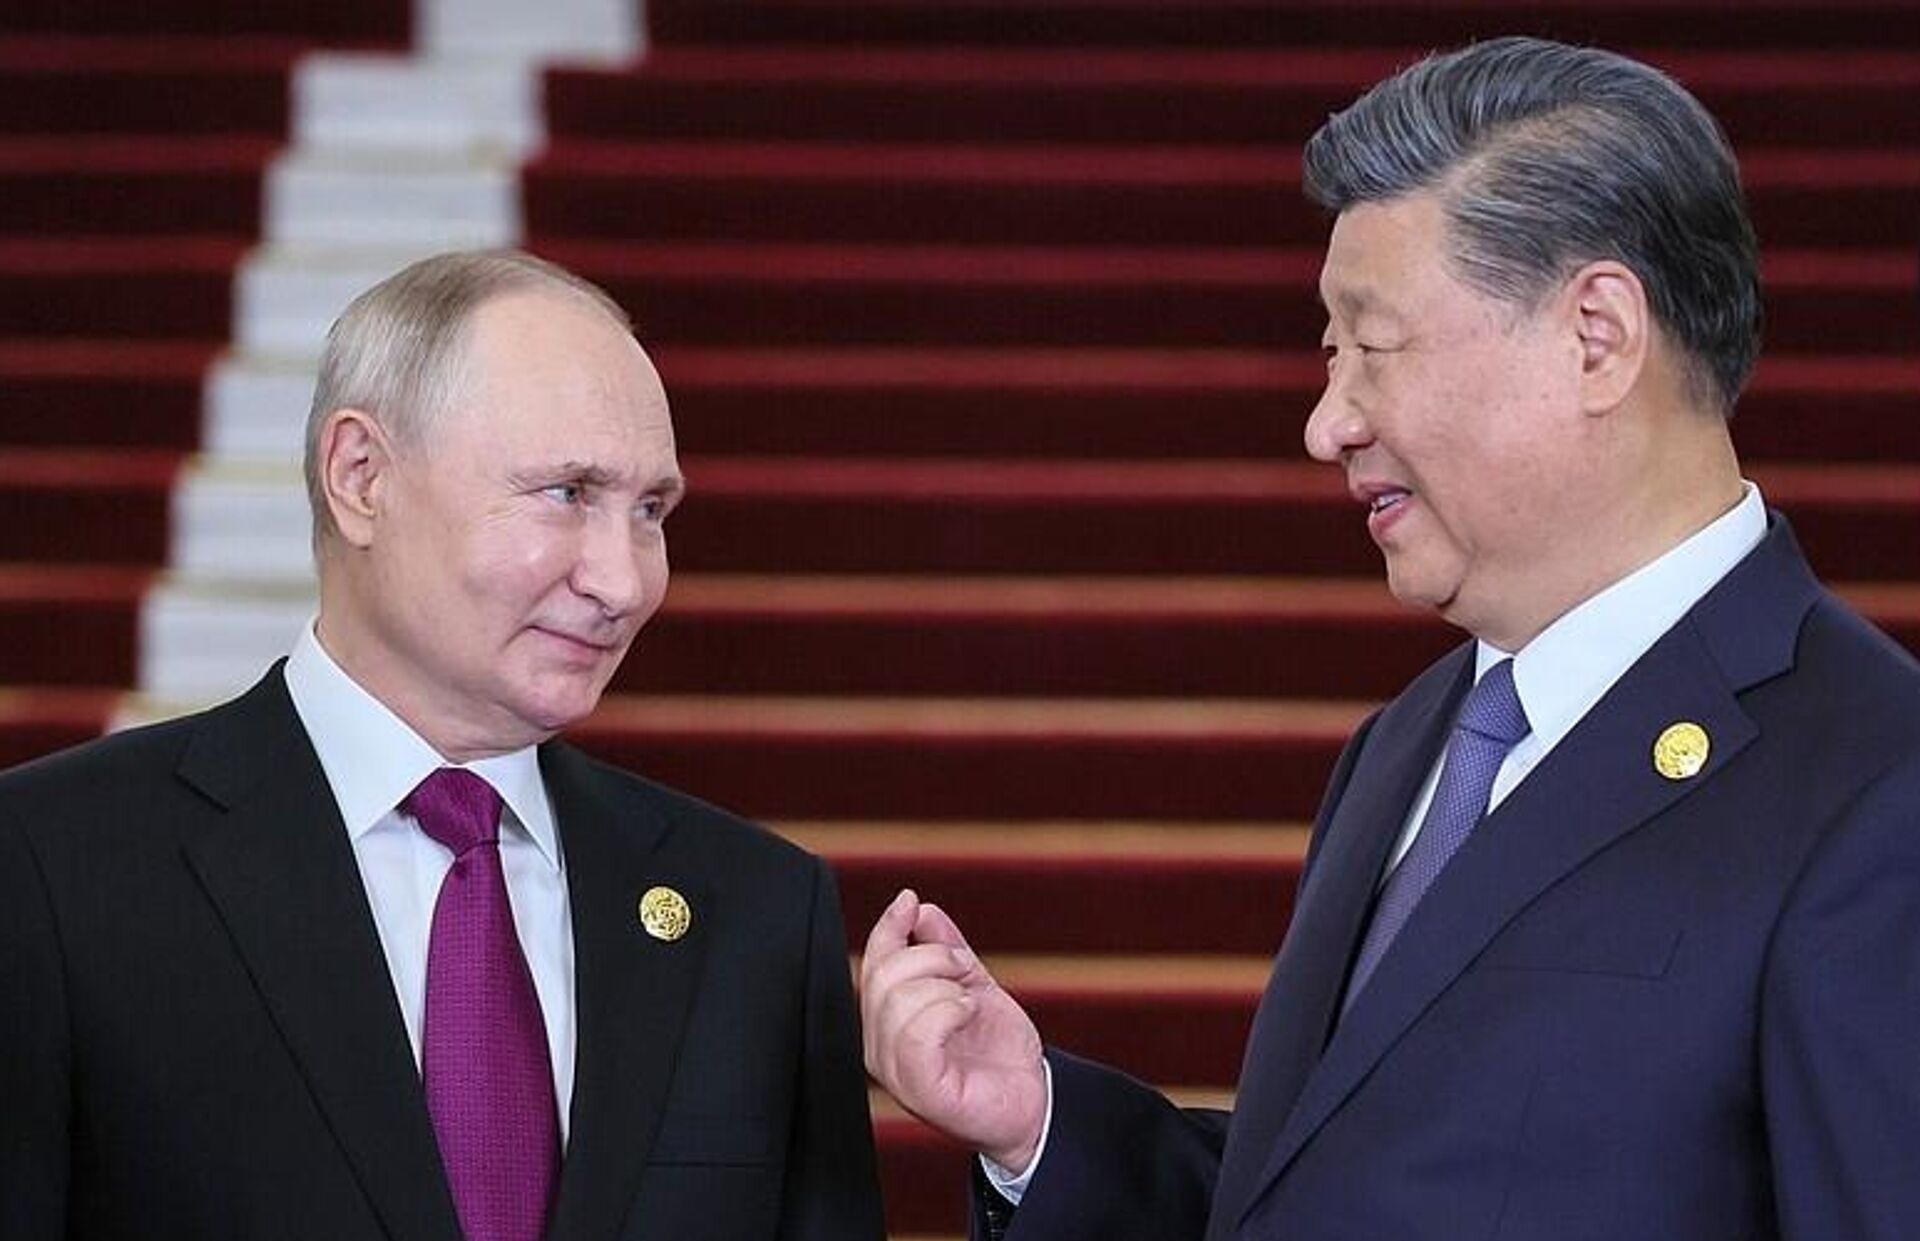 Spiked: страны Запада бьют тревогу из-за союза России и Китая